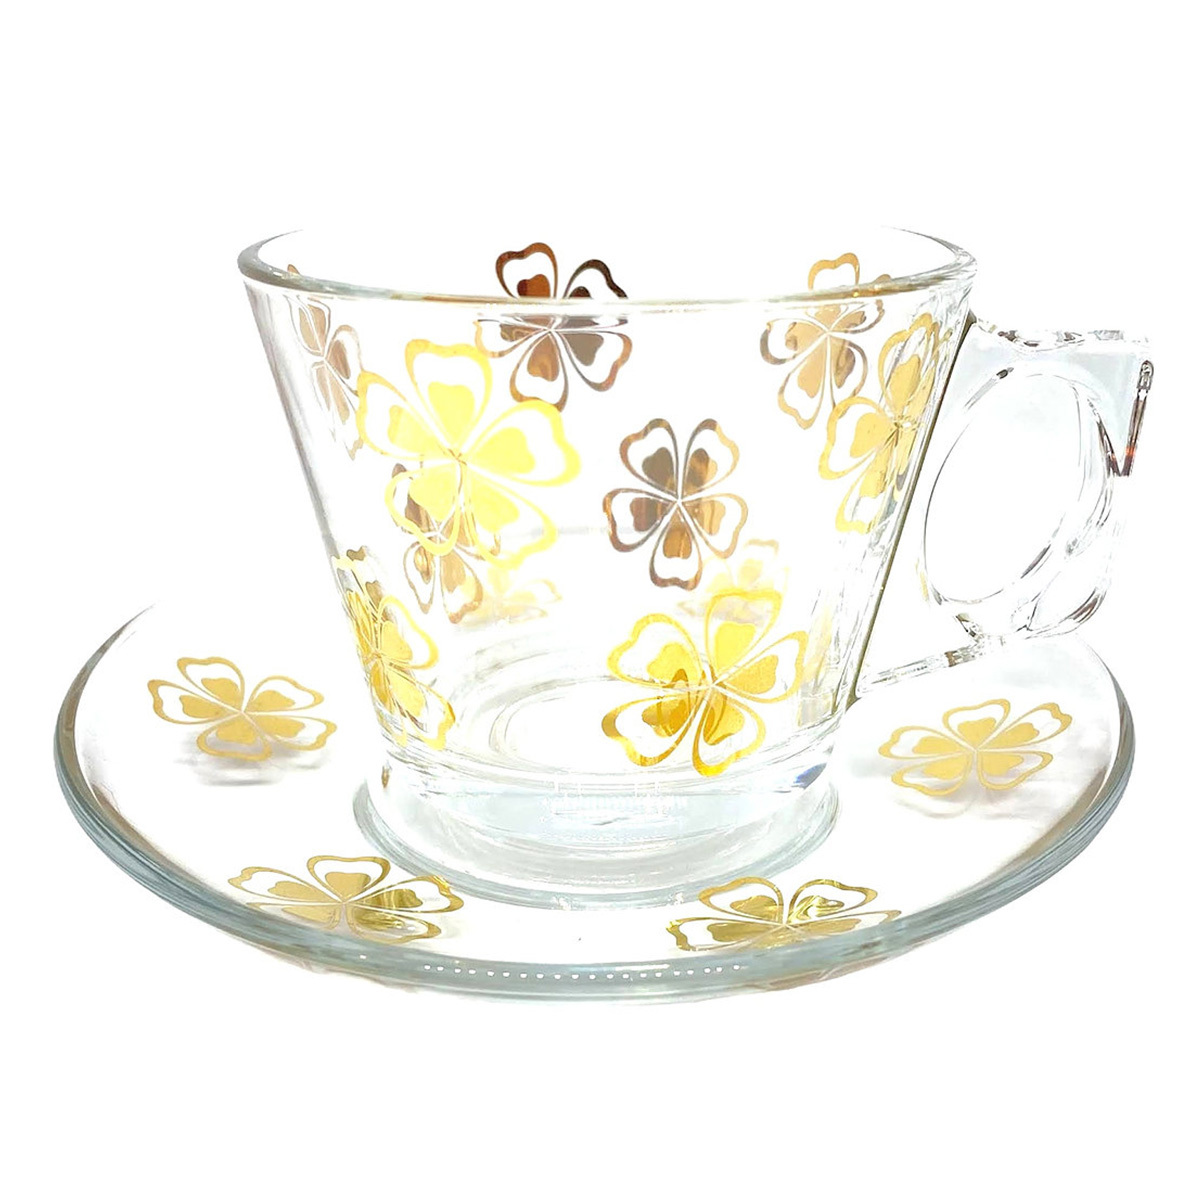 トルコ チャイ カップ ソーサー セット 耐熱ガラス A-33 おしゃれ トルココーヒー グラス トルコ製 ガラス 紅茶 コーヒー 来客用 人気  :trk-grs-a-33-gold:エバラボ8 - 通販 - Yahoo!ショッピング